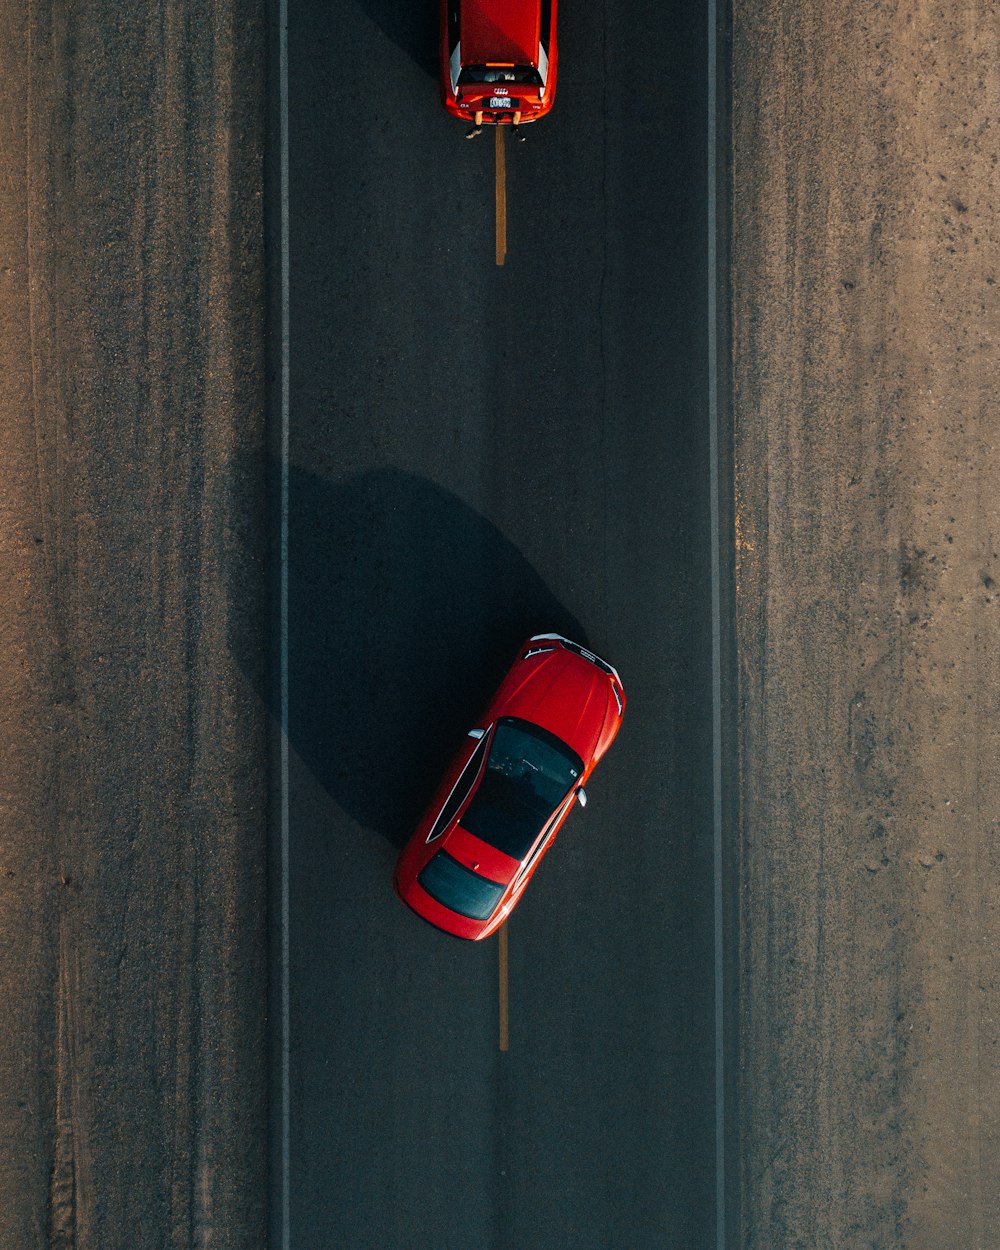 Zwei rote Fahrzeuge tagsüber auf der Straße